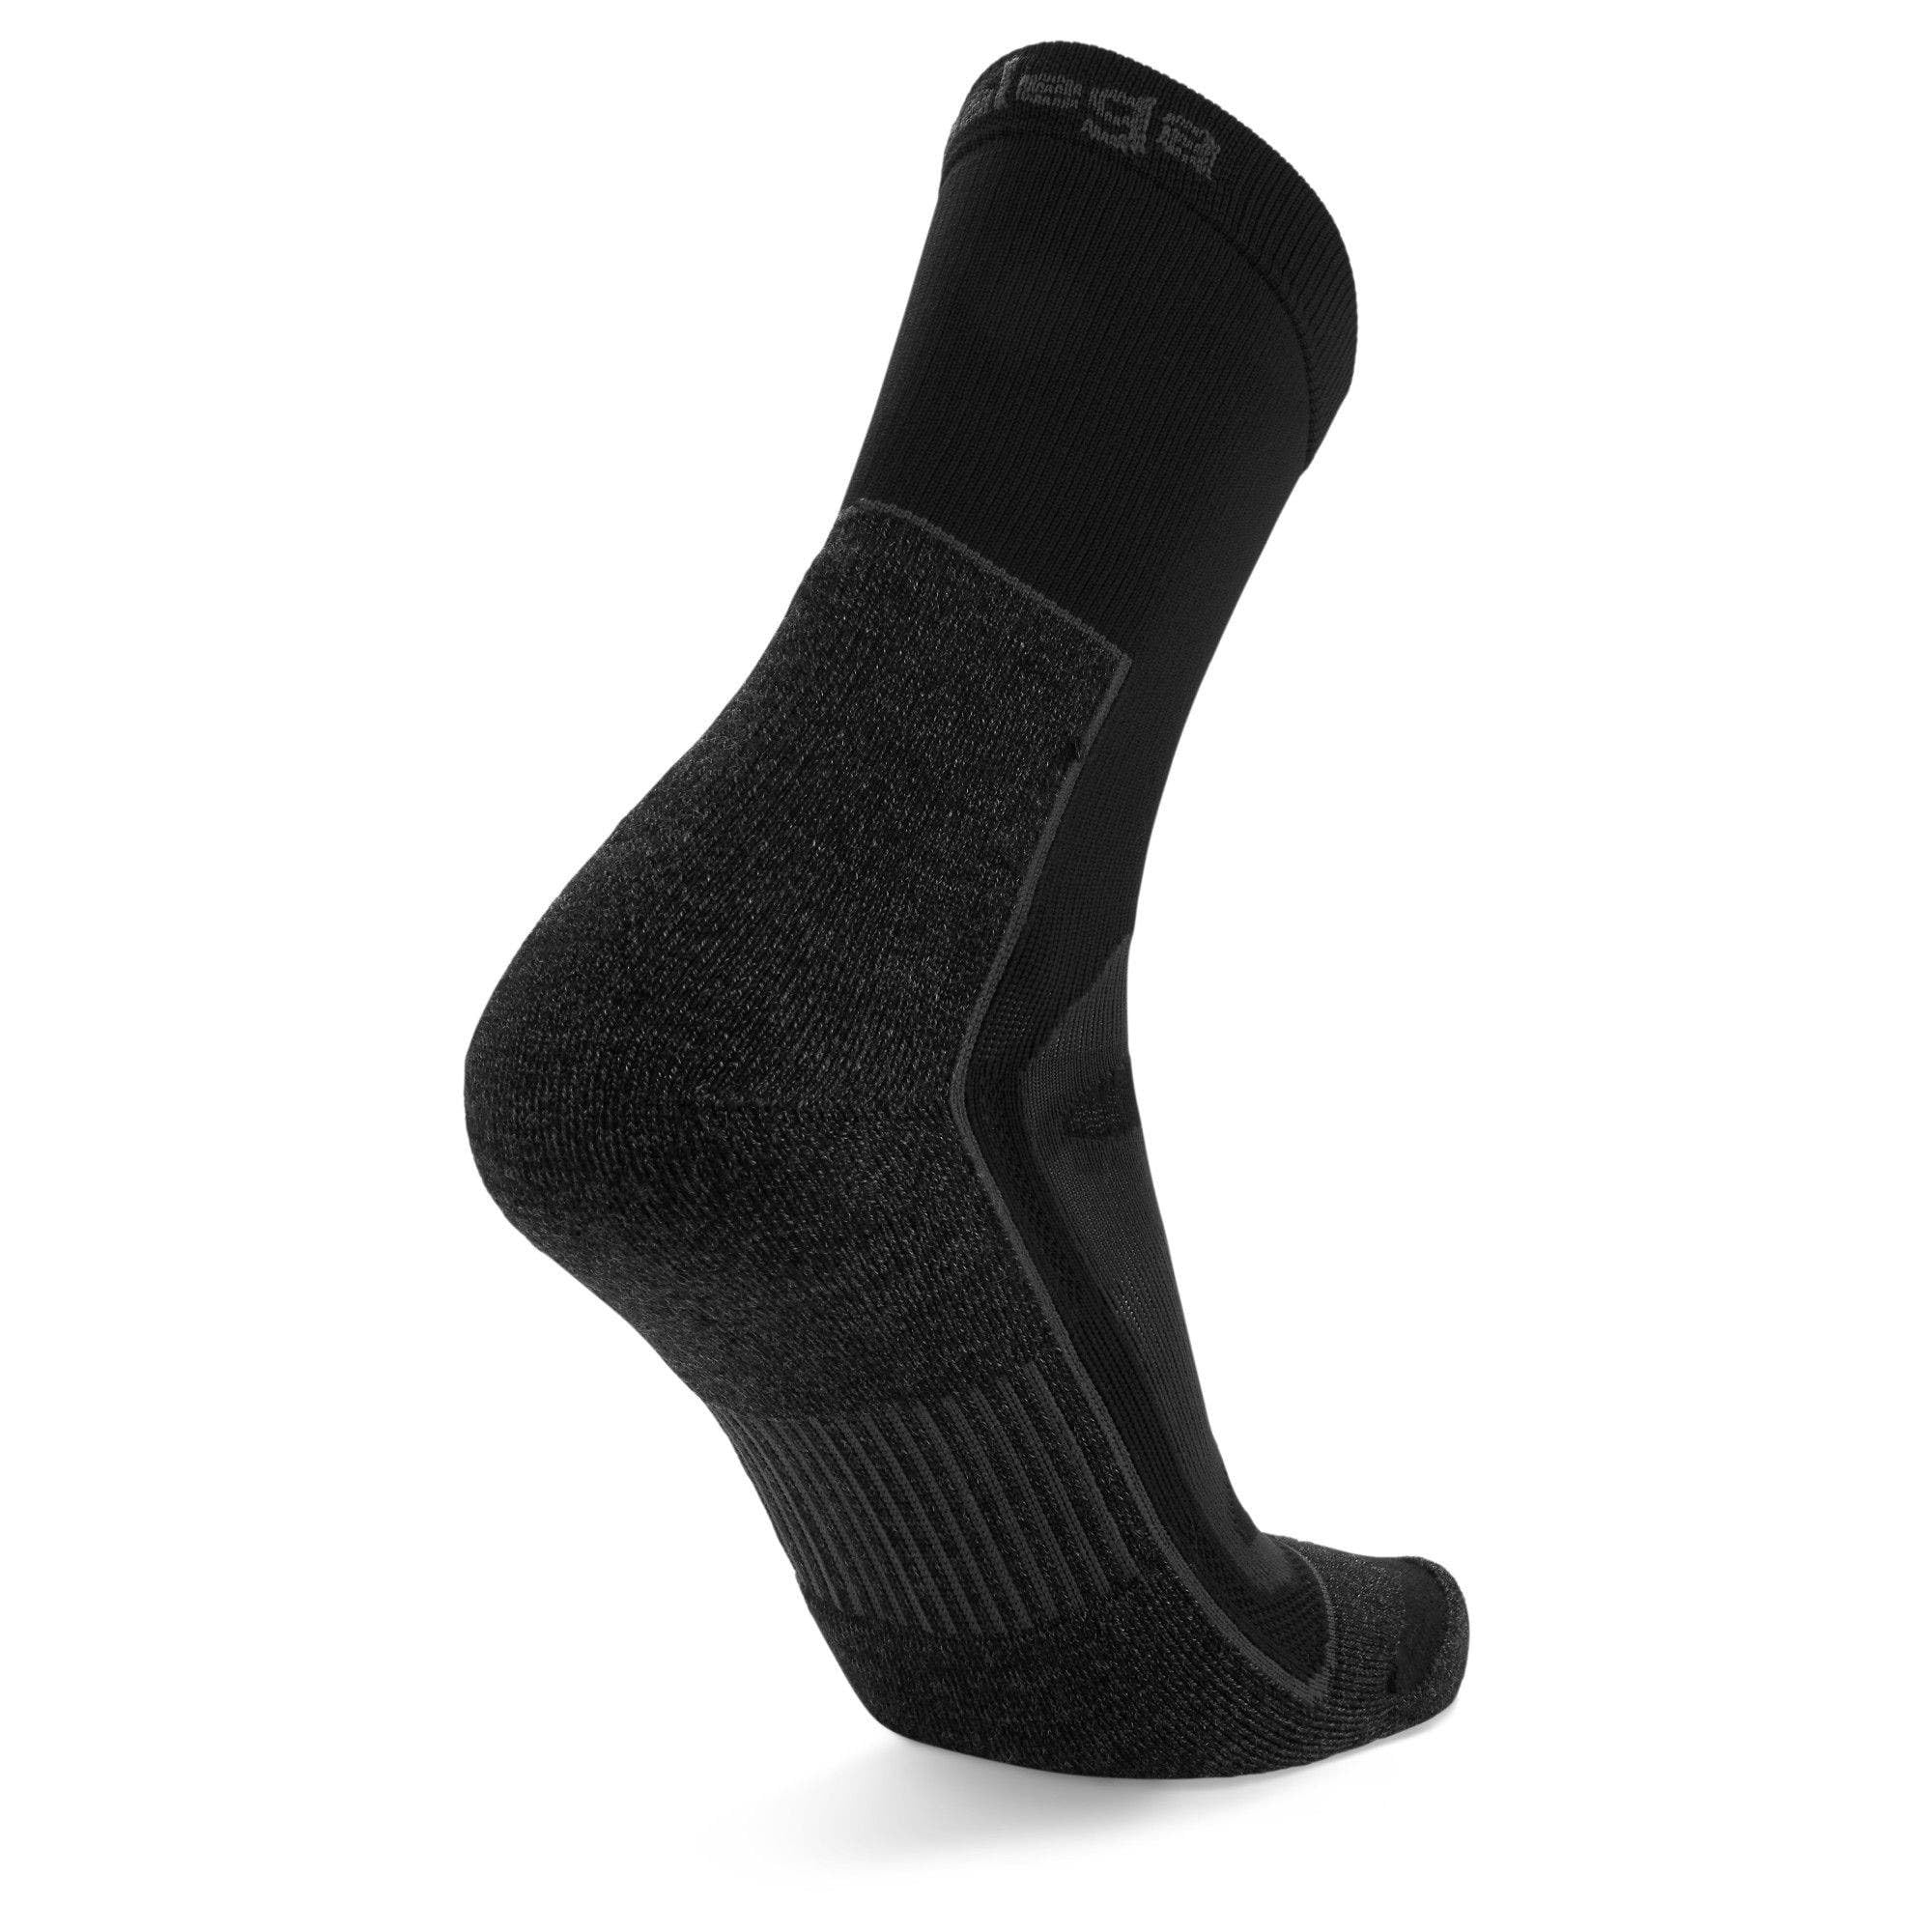 Balega Blister Resist Performance Crew Athletic Running Socks for Men and Women (1 Pair)